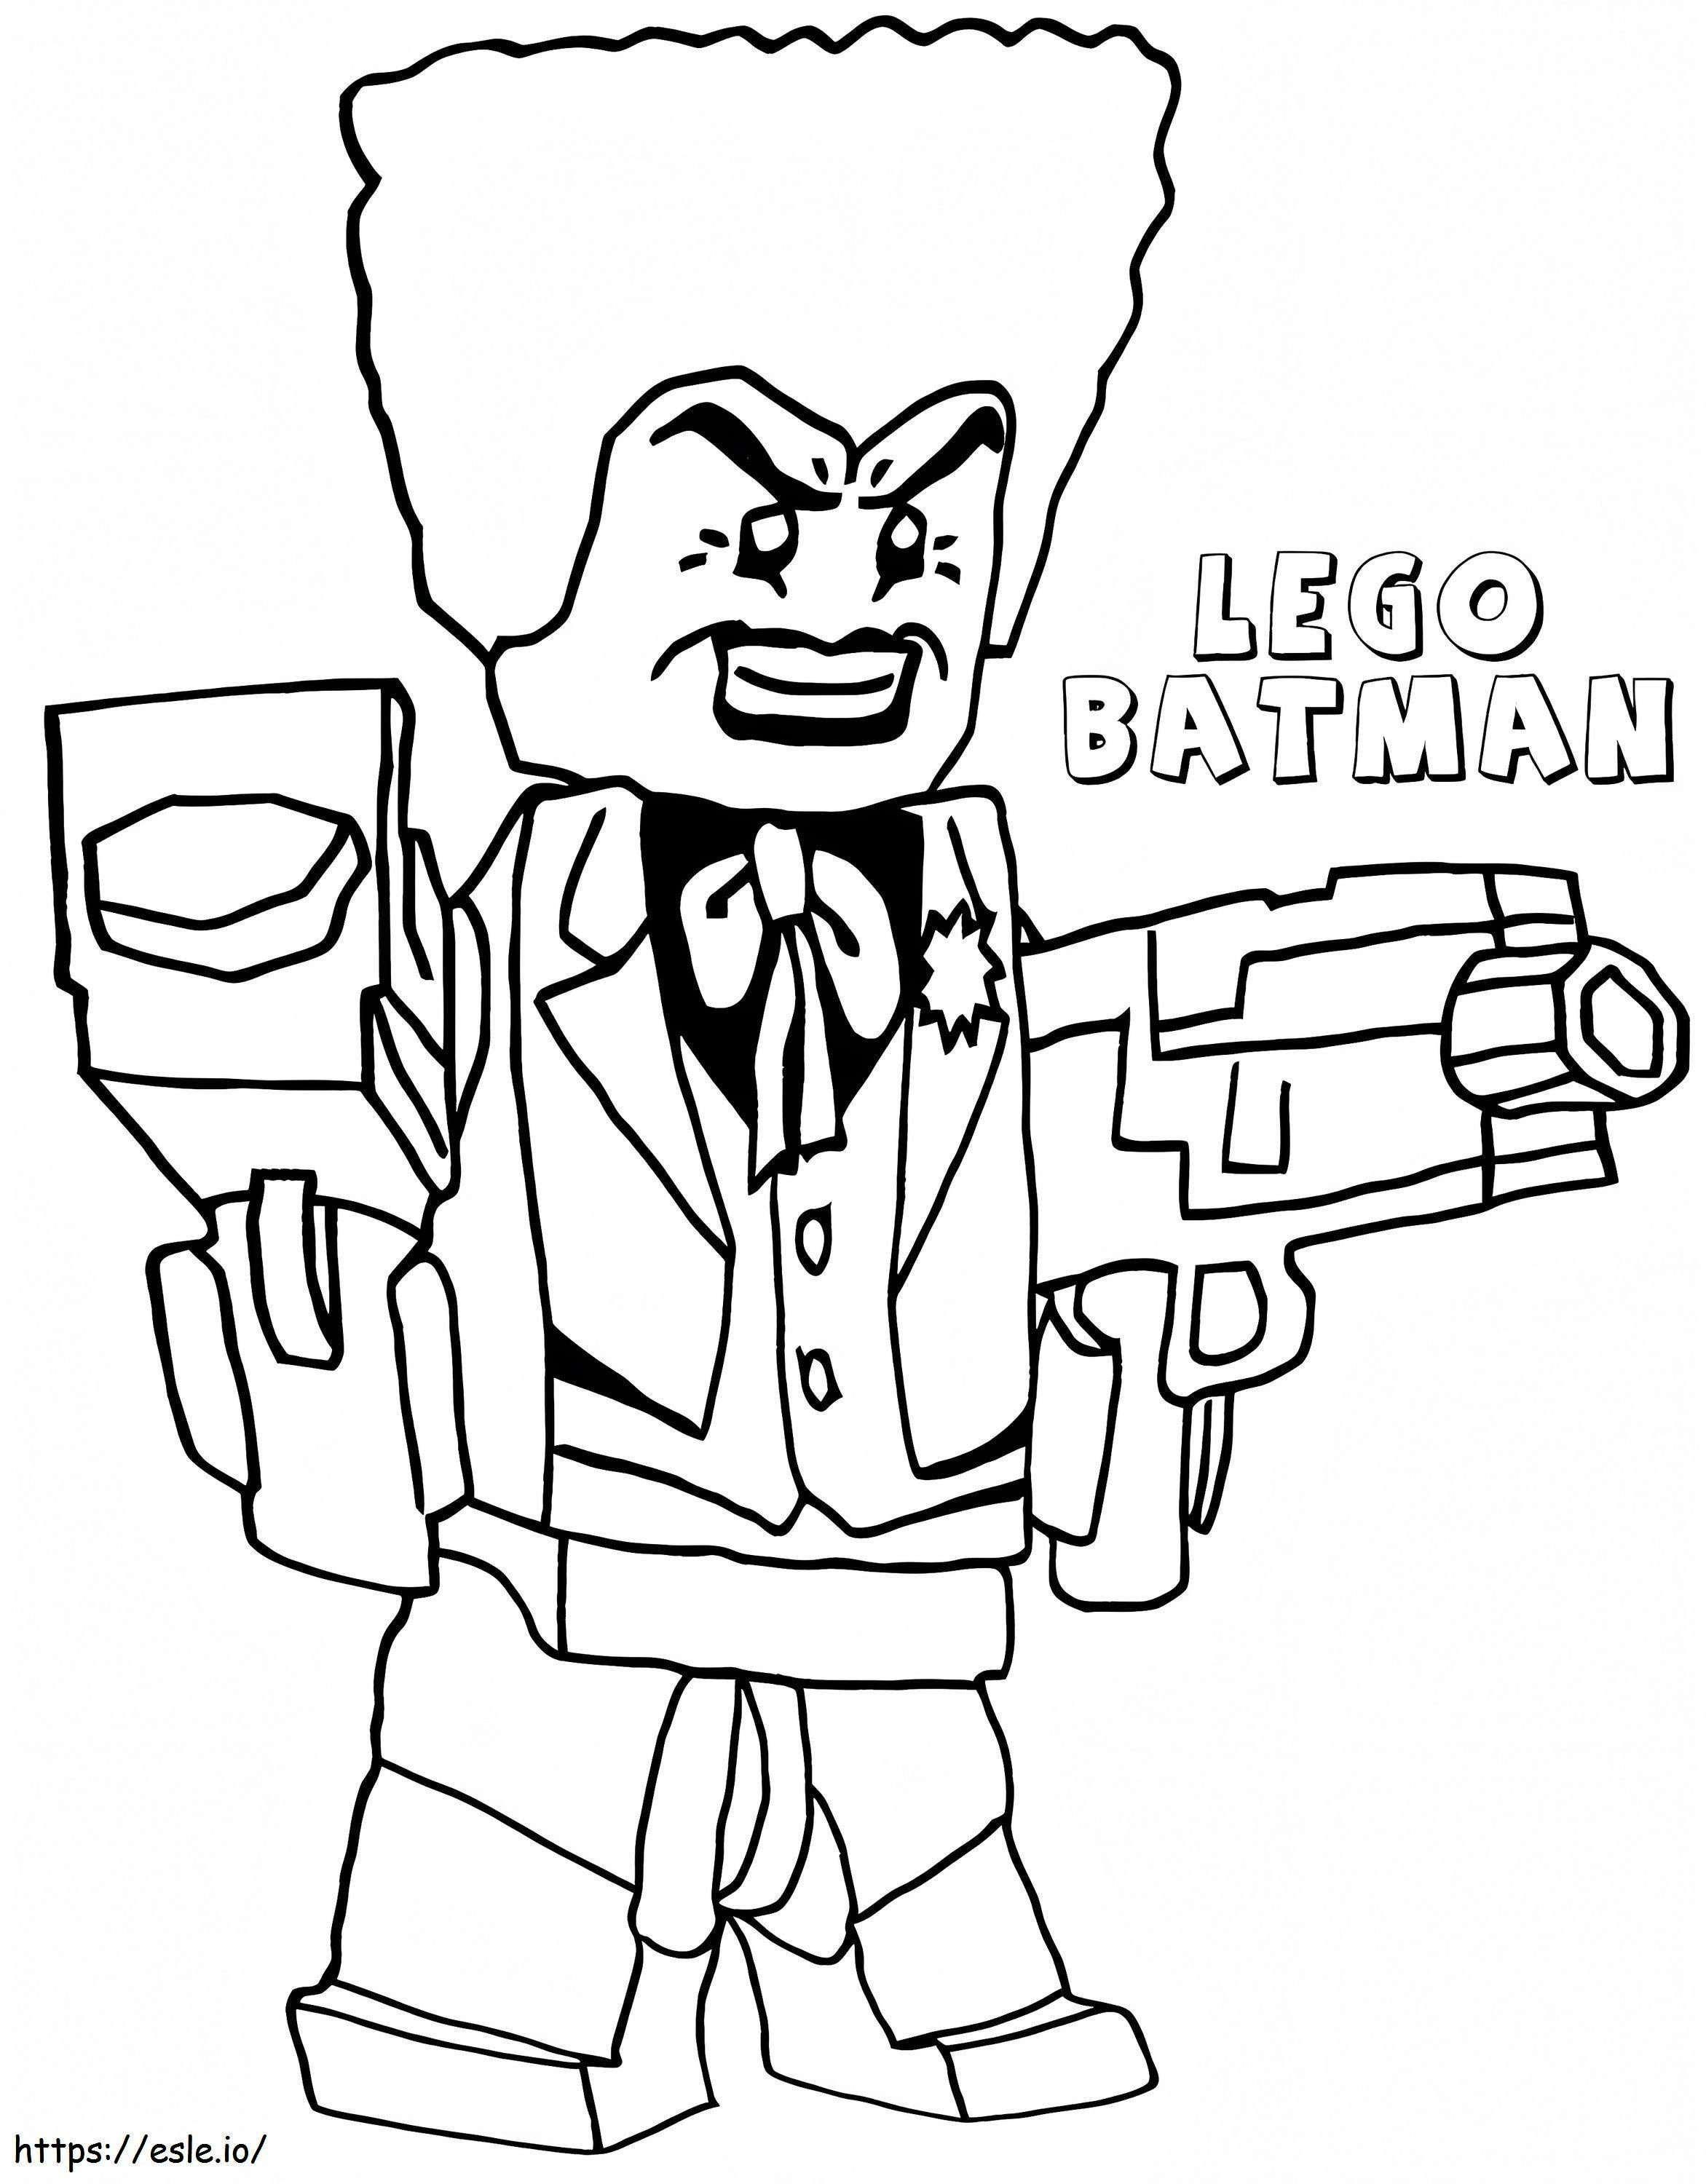 Coloriage 1547514416 Kissclipart Joker Lego Batman Clipart Batman Jo 09C4555Cfc03B758 à imprimer dessin